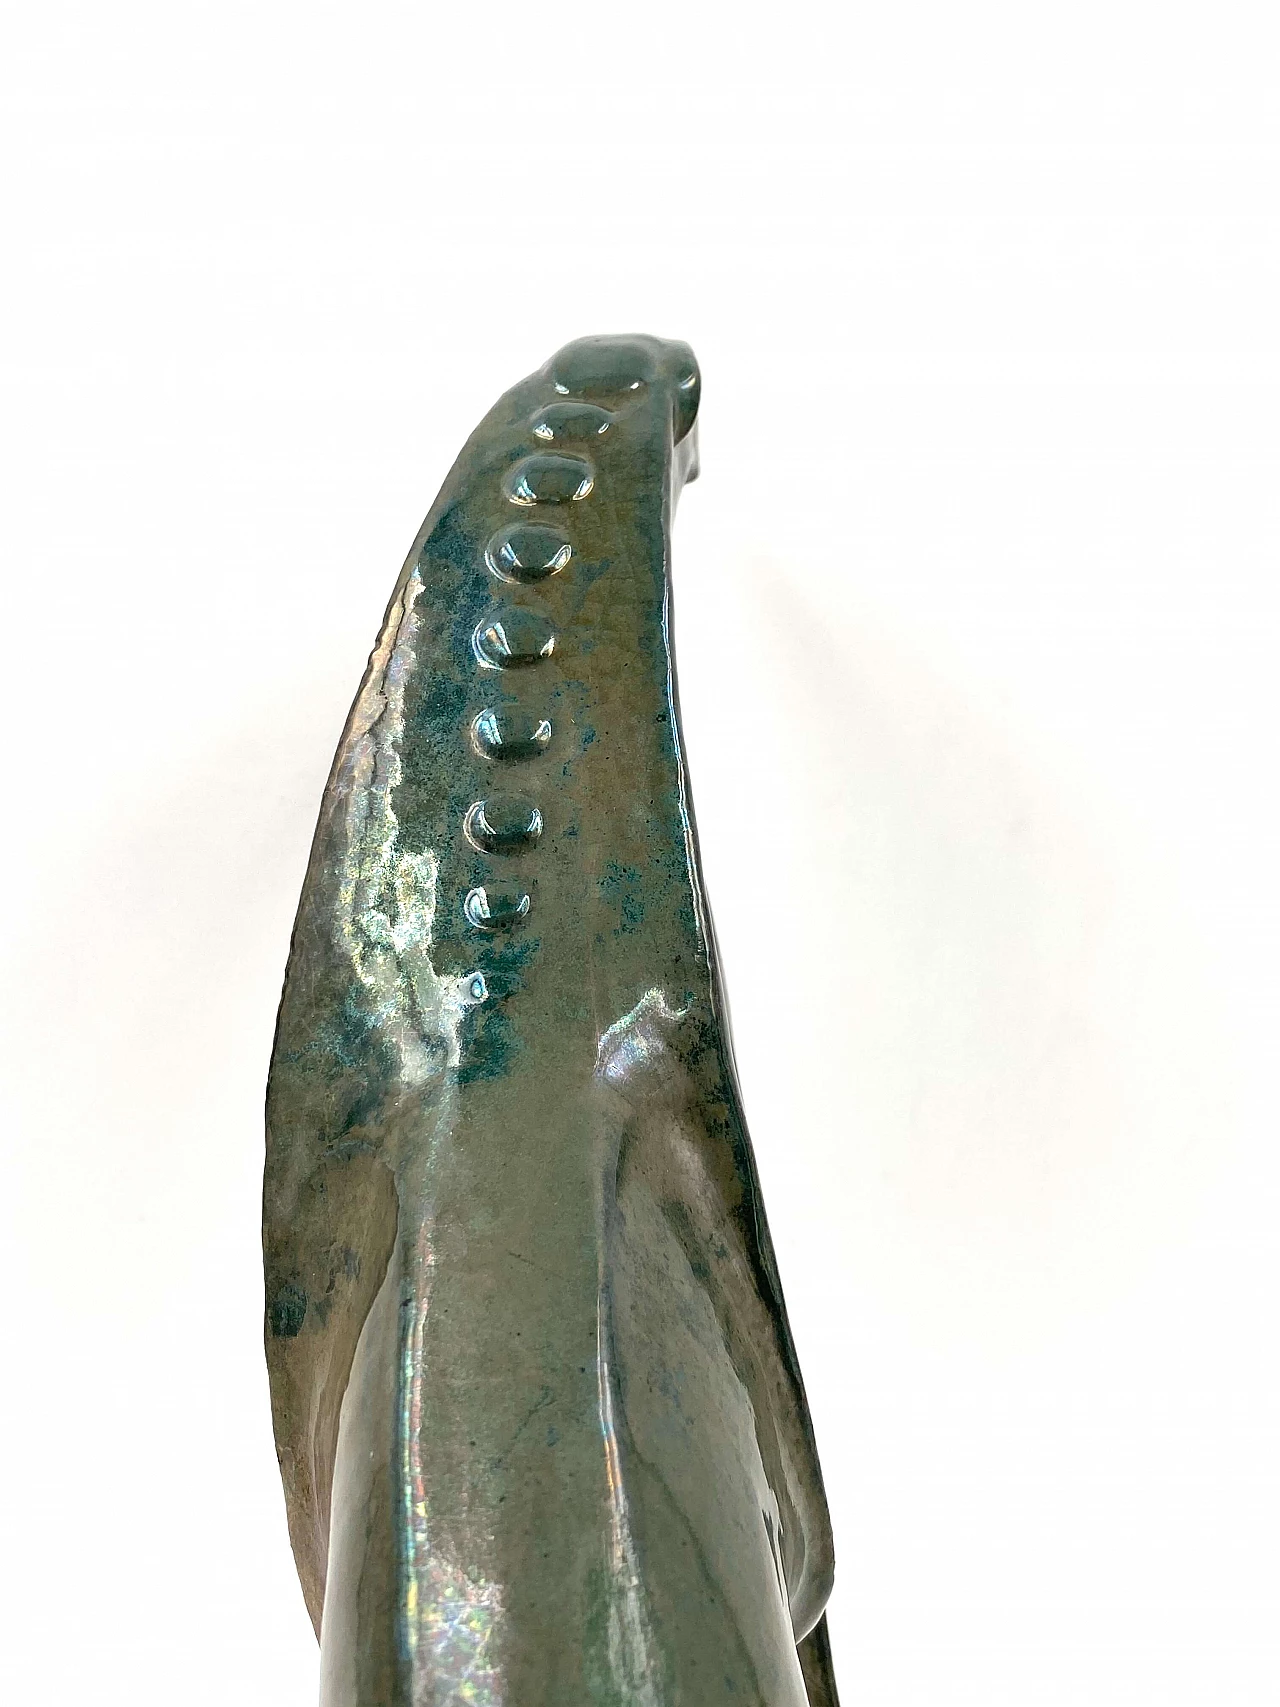 A. Chini, Créature Fantastique, craquelé ceramic sculpture, 1930s 1306783